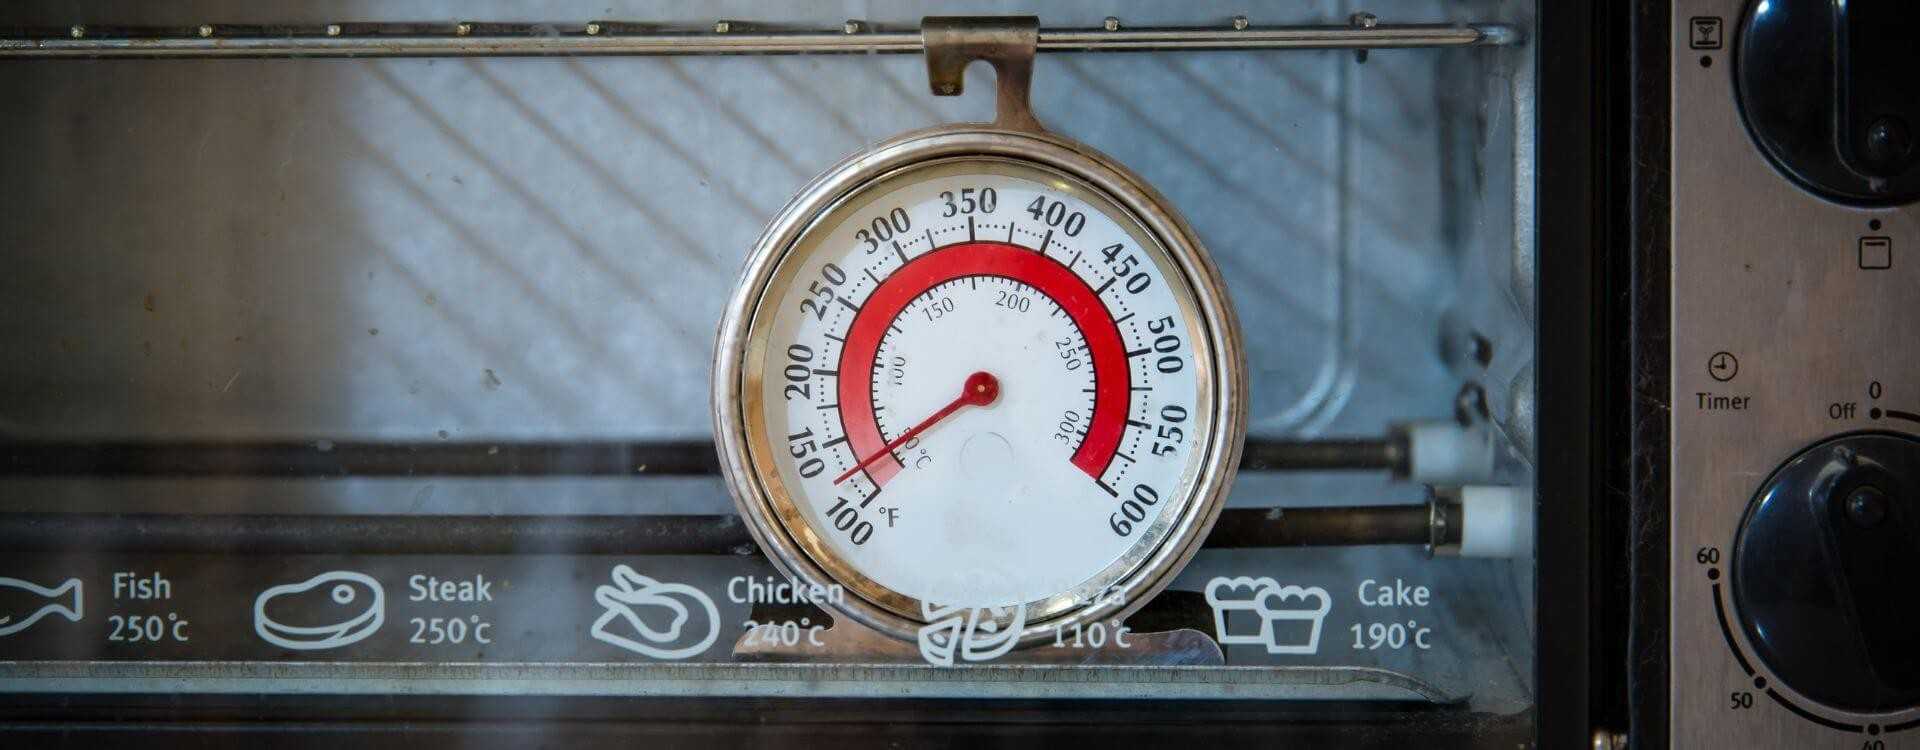 Thermomètres de Cuisine Professionnels - Appareils et Ustensiles